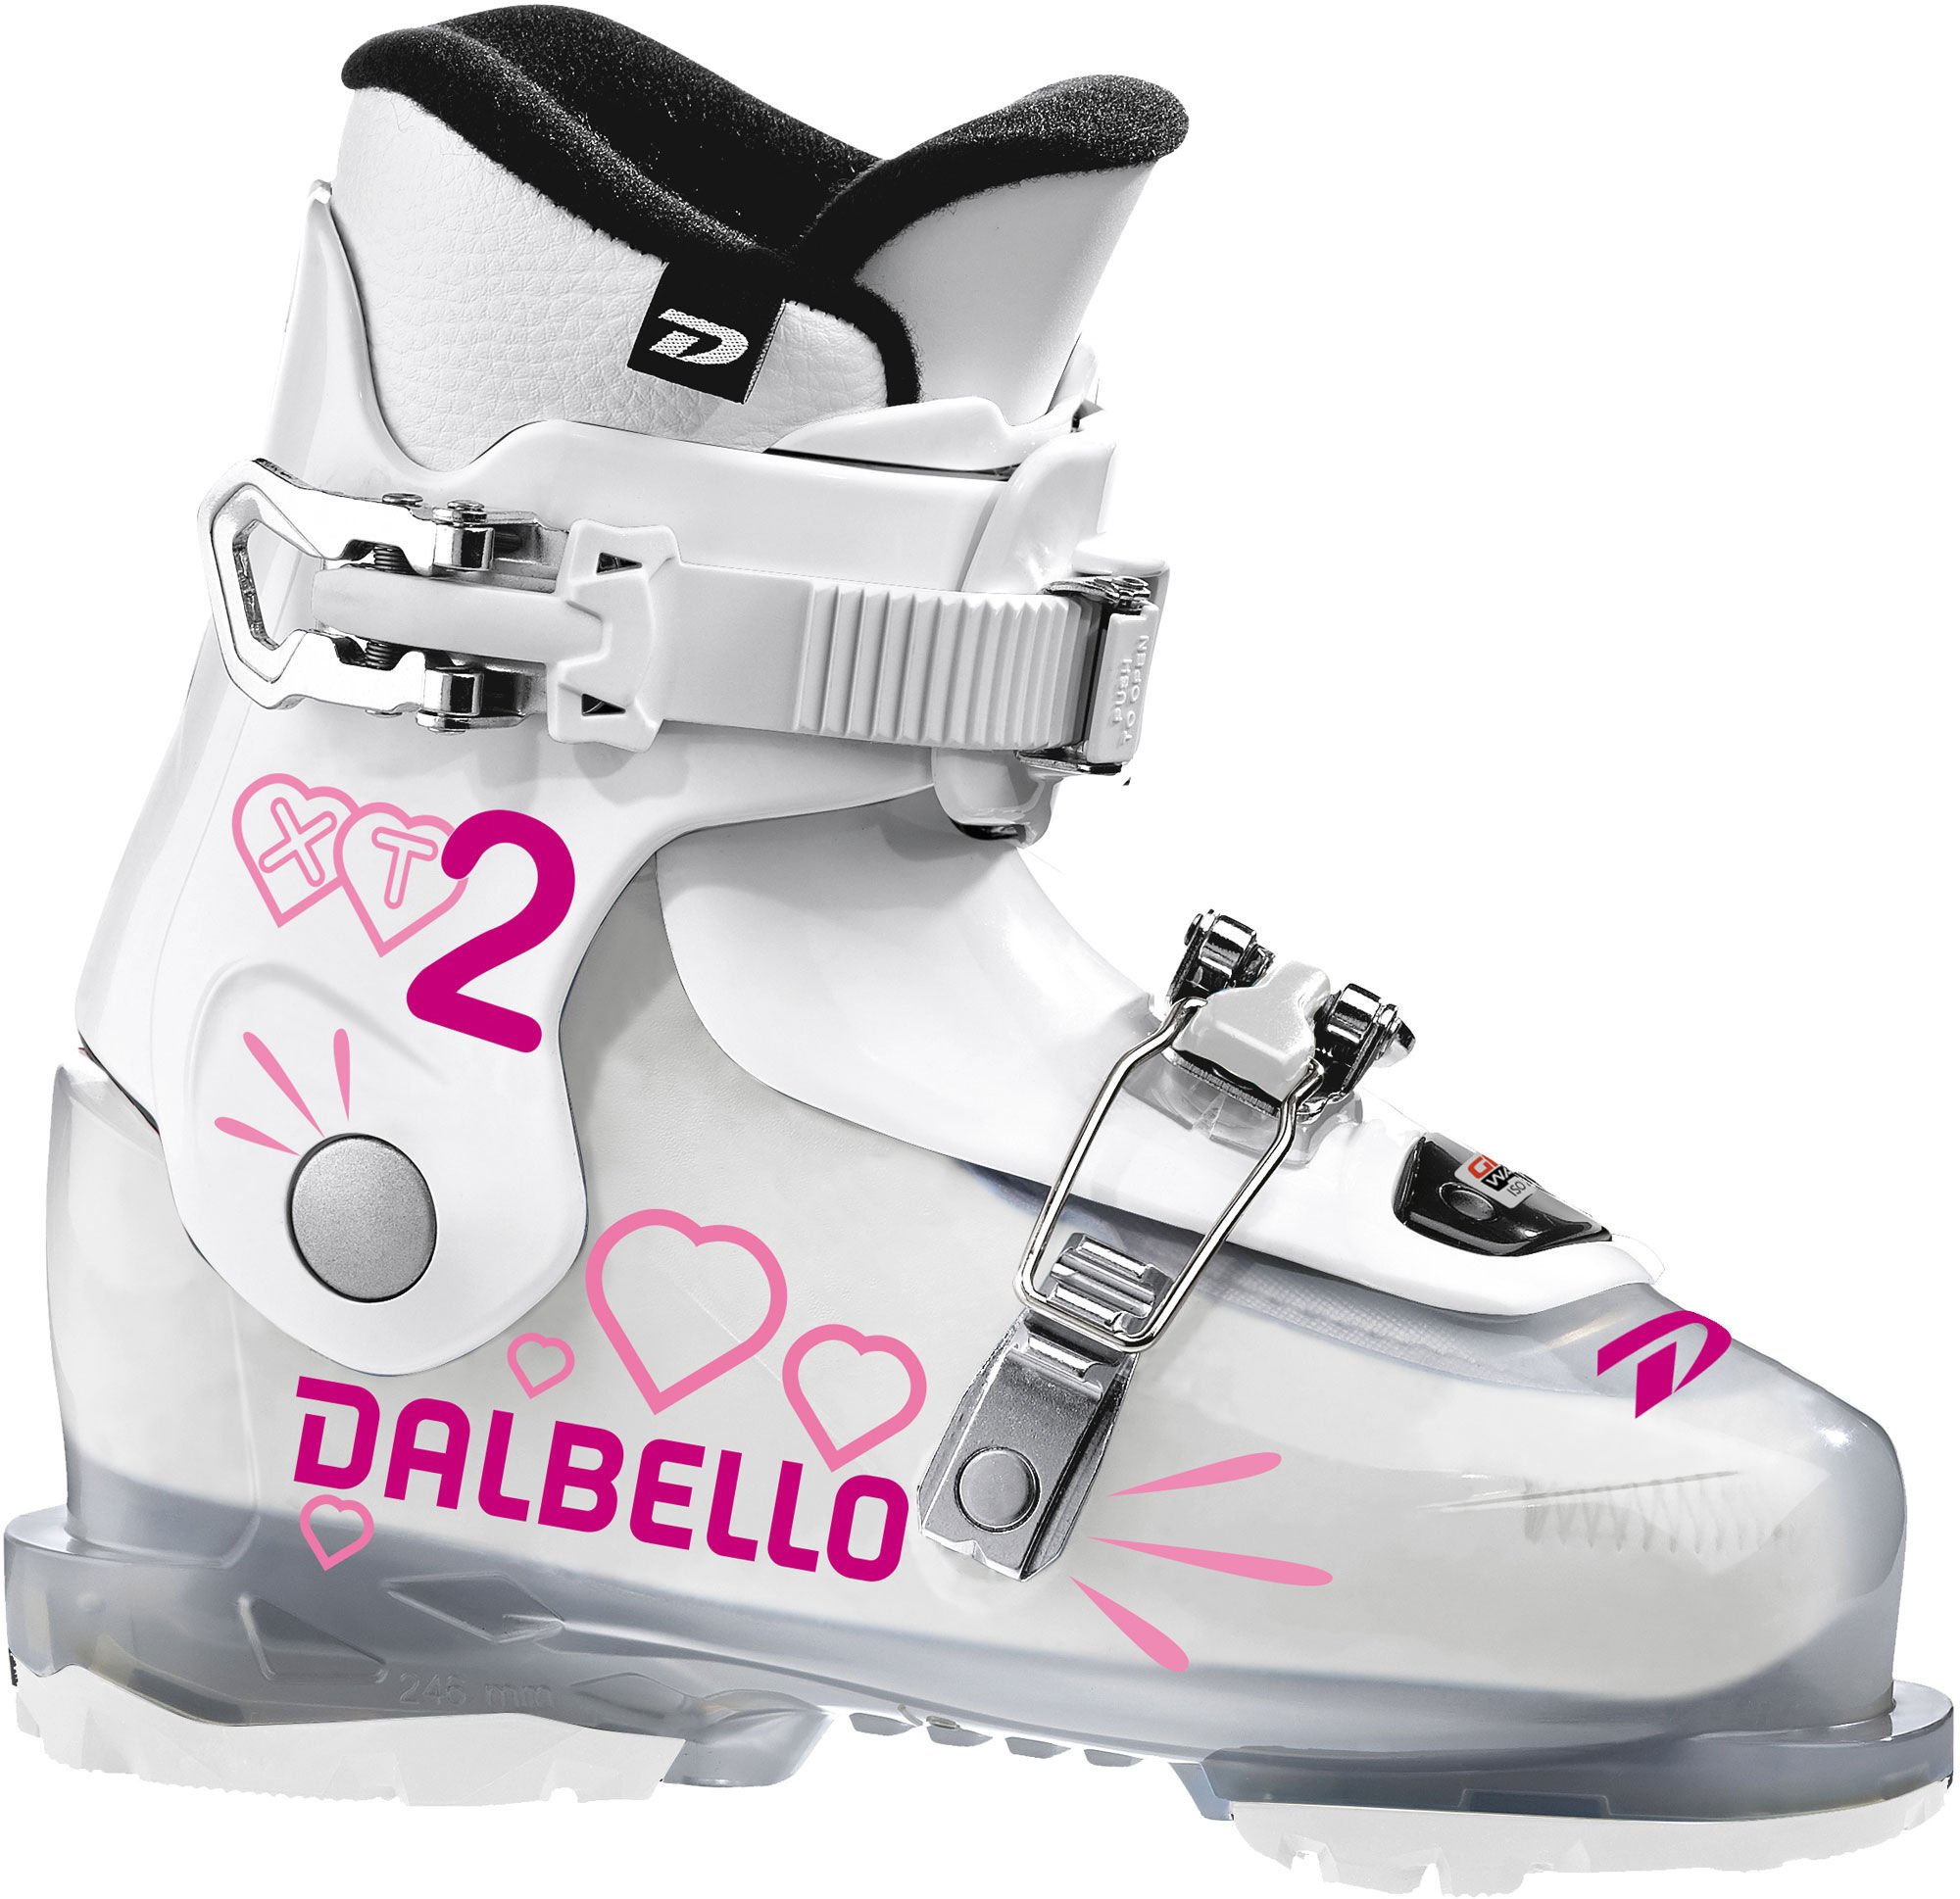 Detské lyžiarky Dalbello XT 2 Kids GW Veľkosť: 22 cm